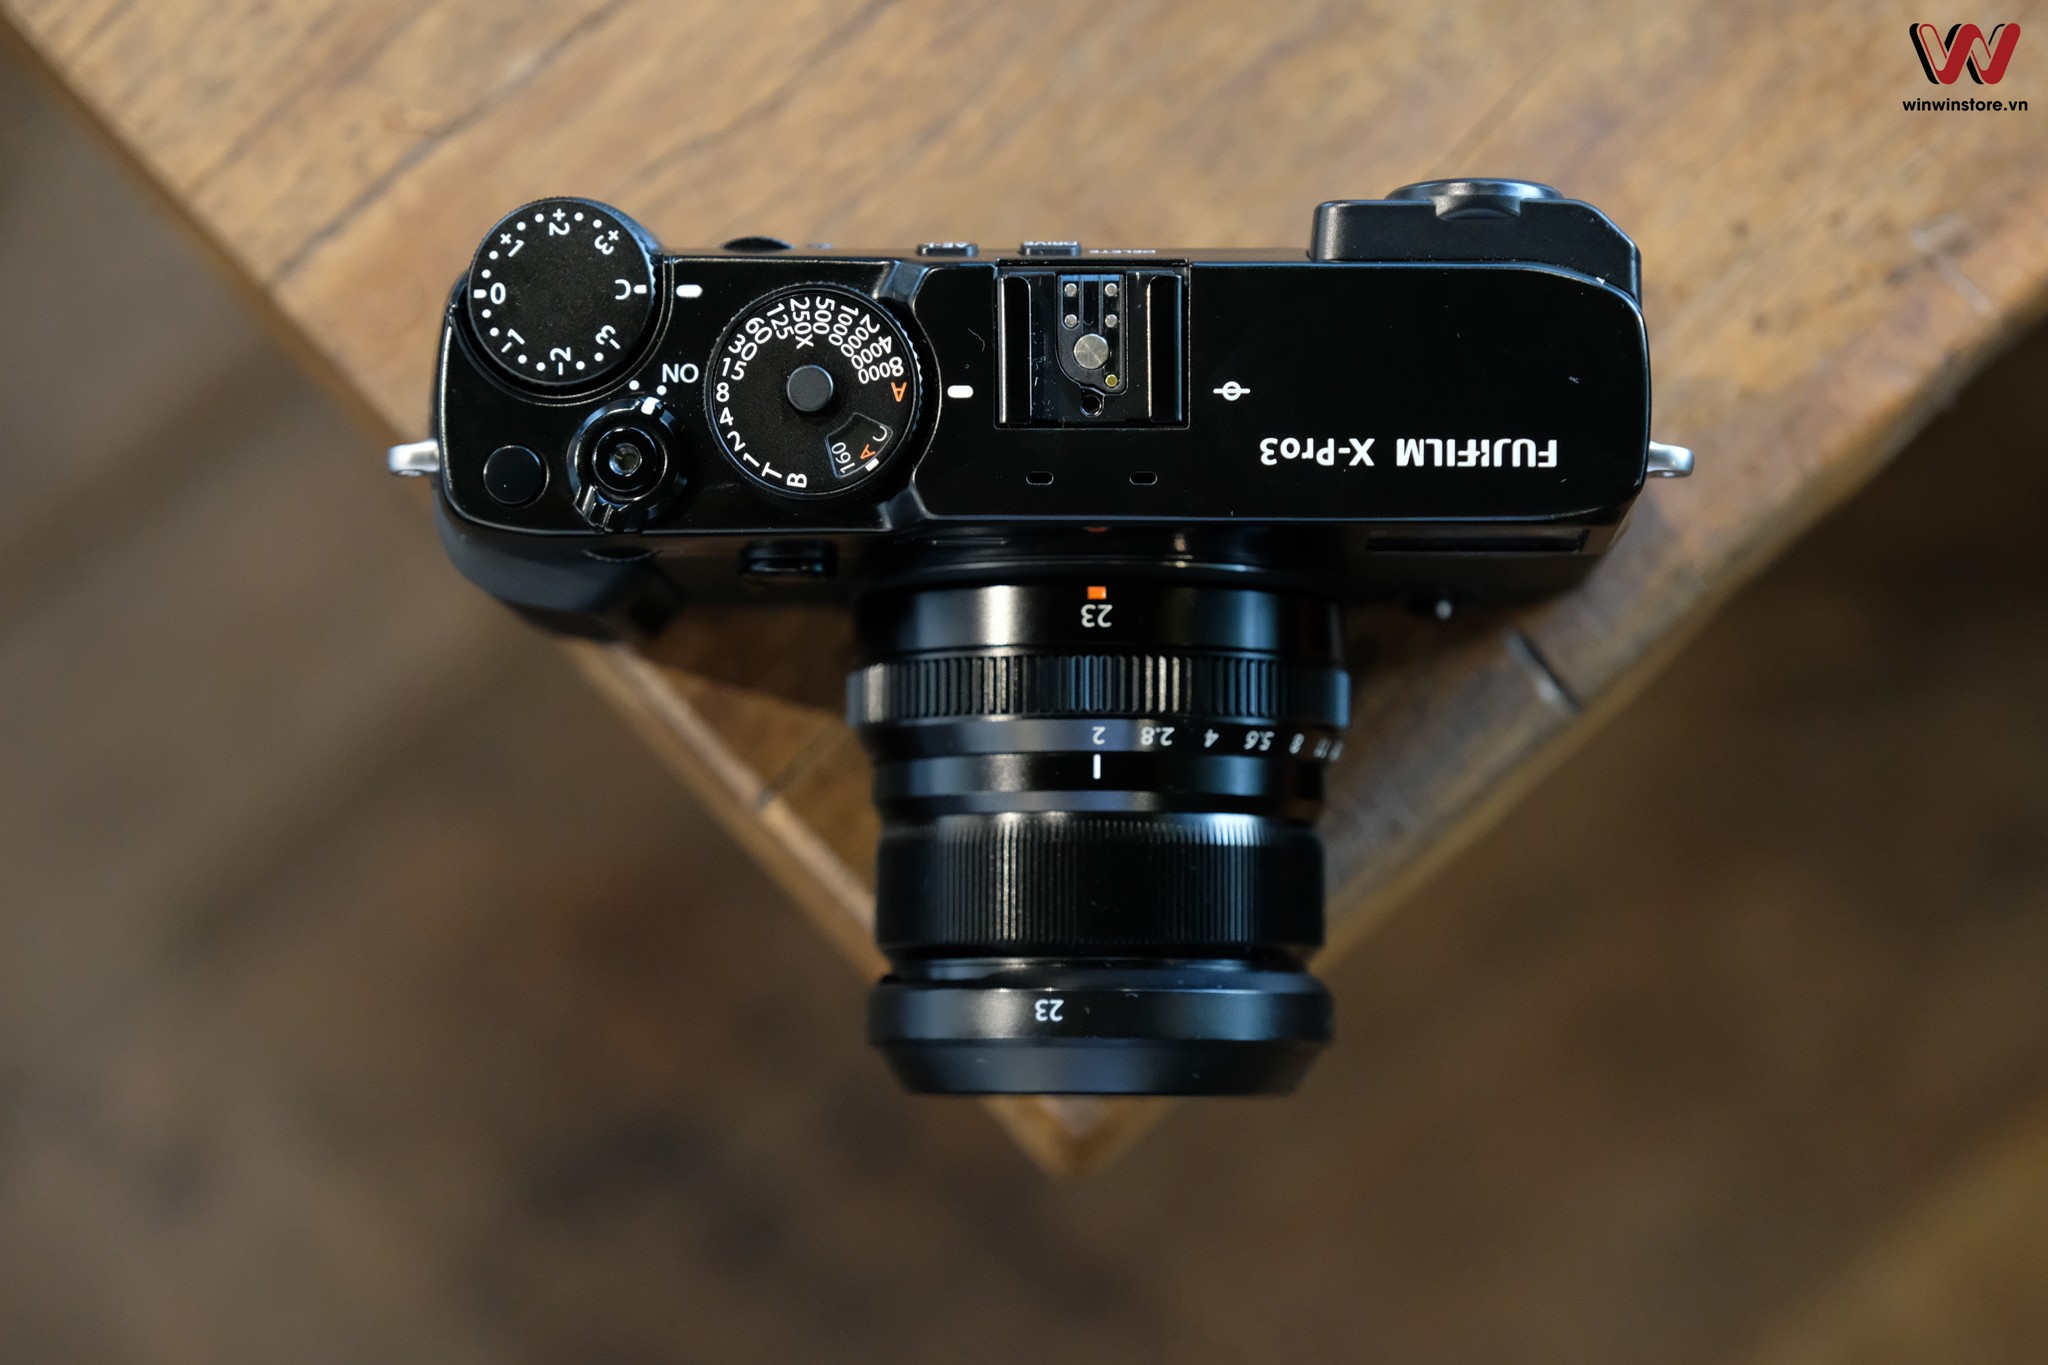 Khuyến mãi đầu năm 2021 tại WinWinStore: Tặng 4 triệu khi mua ống kính kèm máy ảnh Fujifilm X-S10